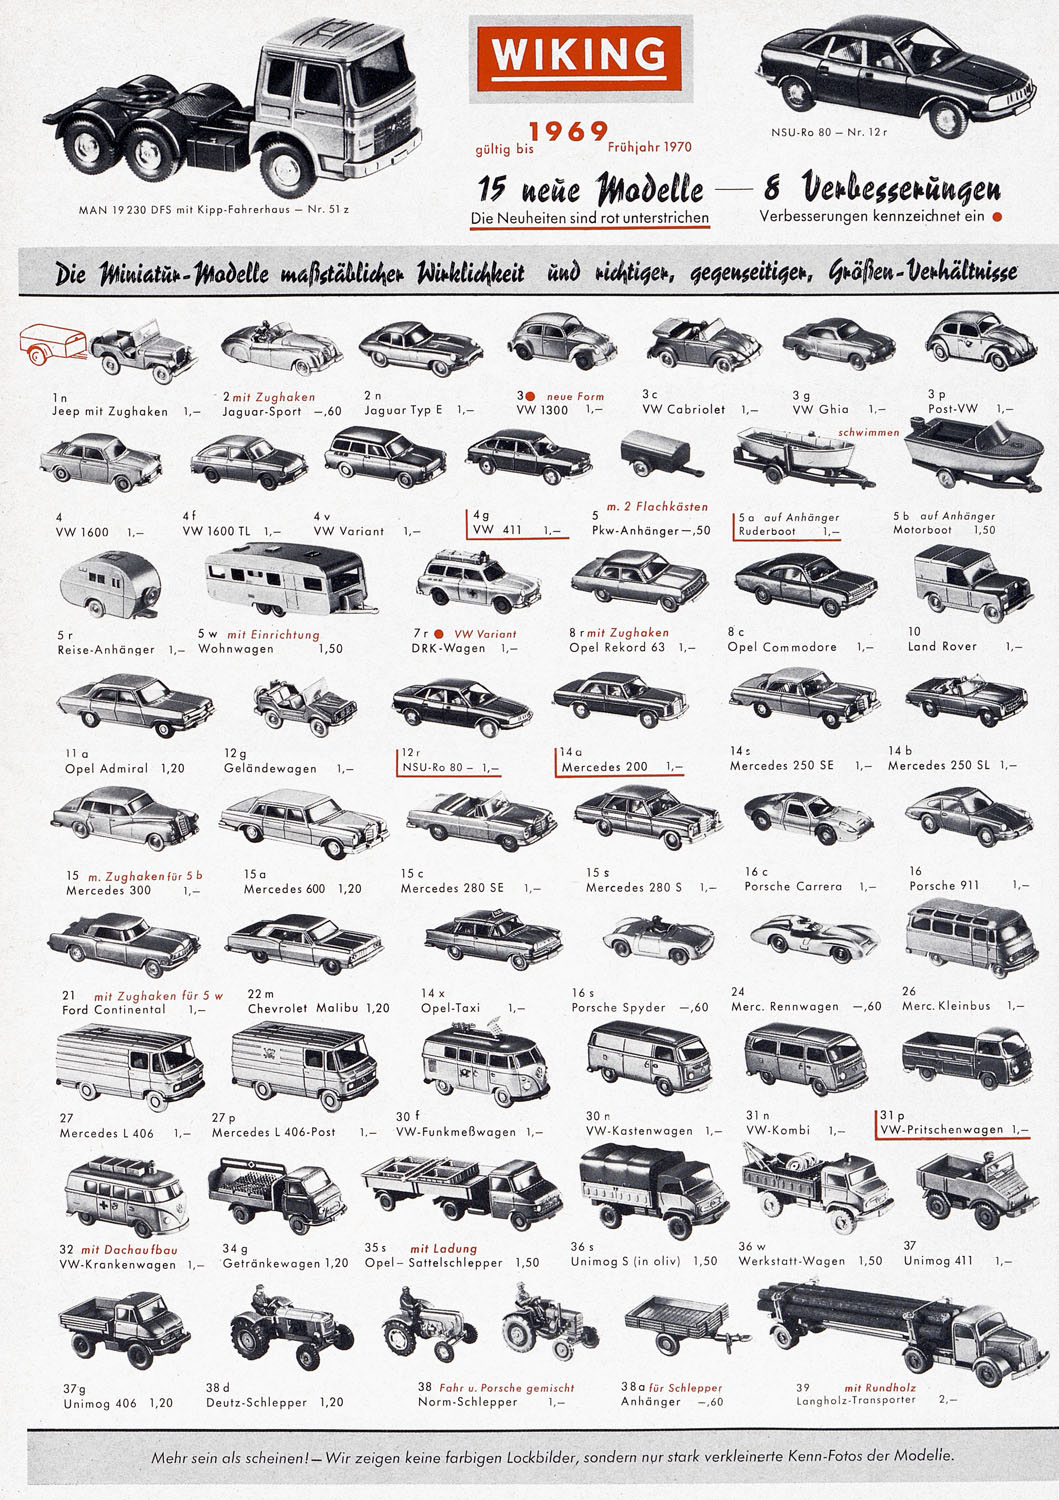 Wiking Katalog 1969, Wiking Modellbau Kataloge, Preisliste 1969, Bildpreisliste 1969, Verkehrsmodelle 1969